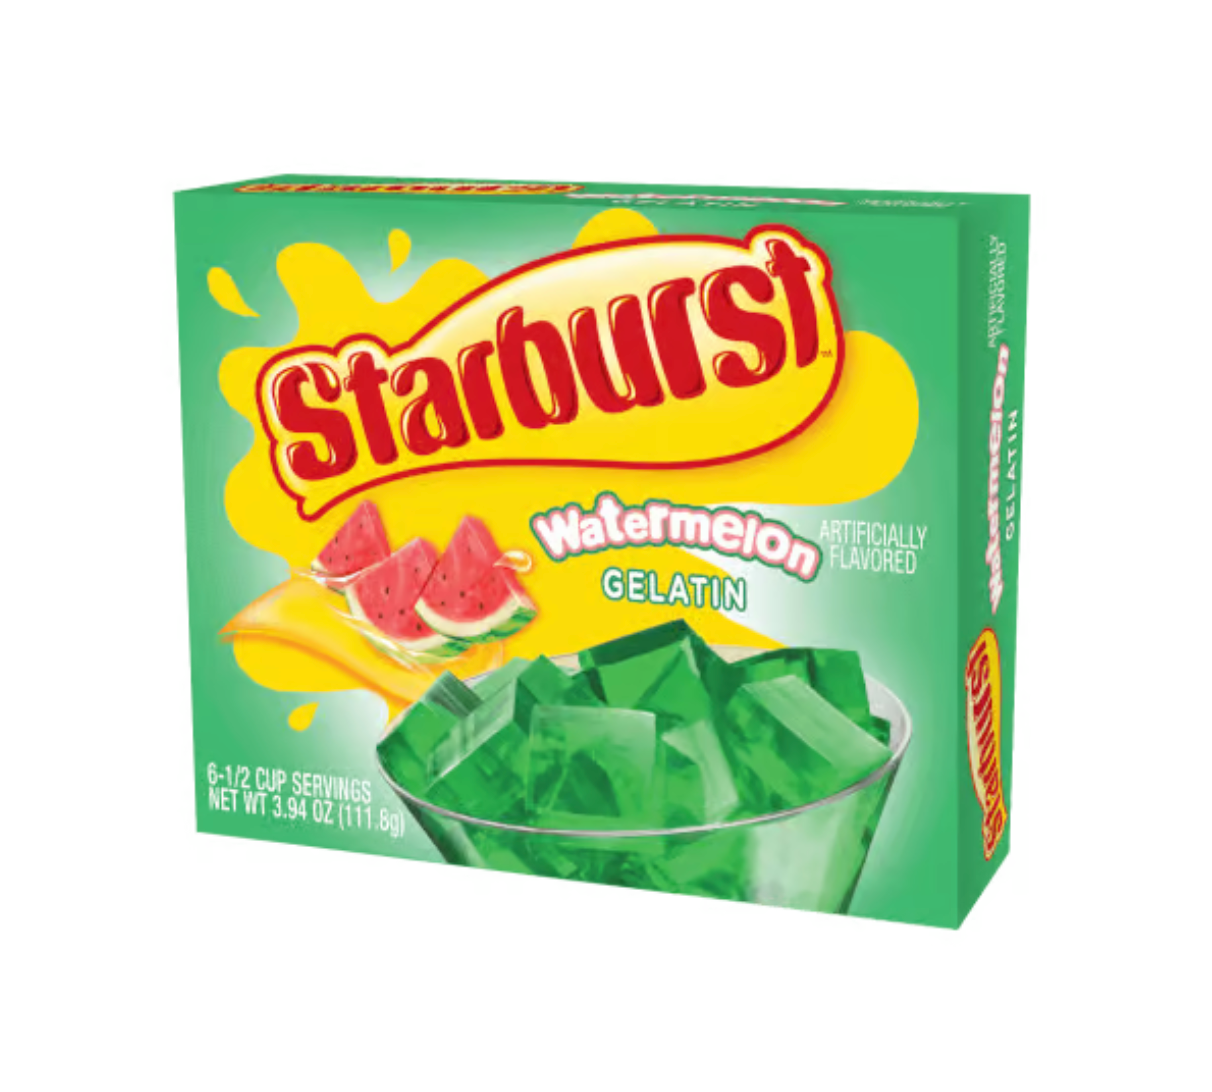 Starburst - Watermelon Gelatin - 111g